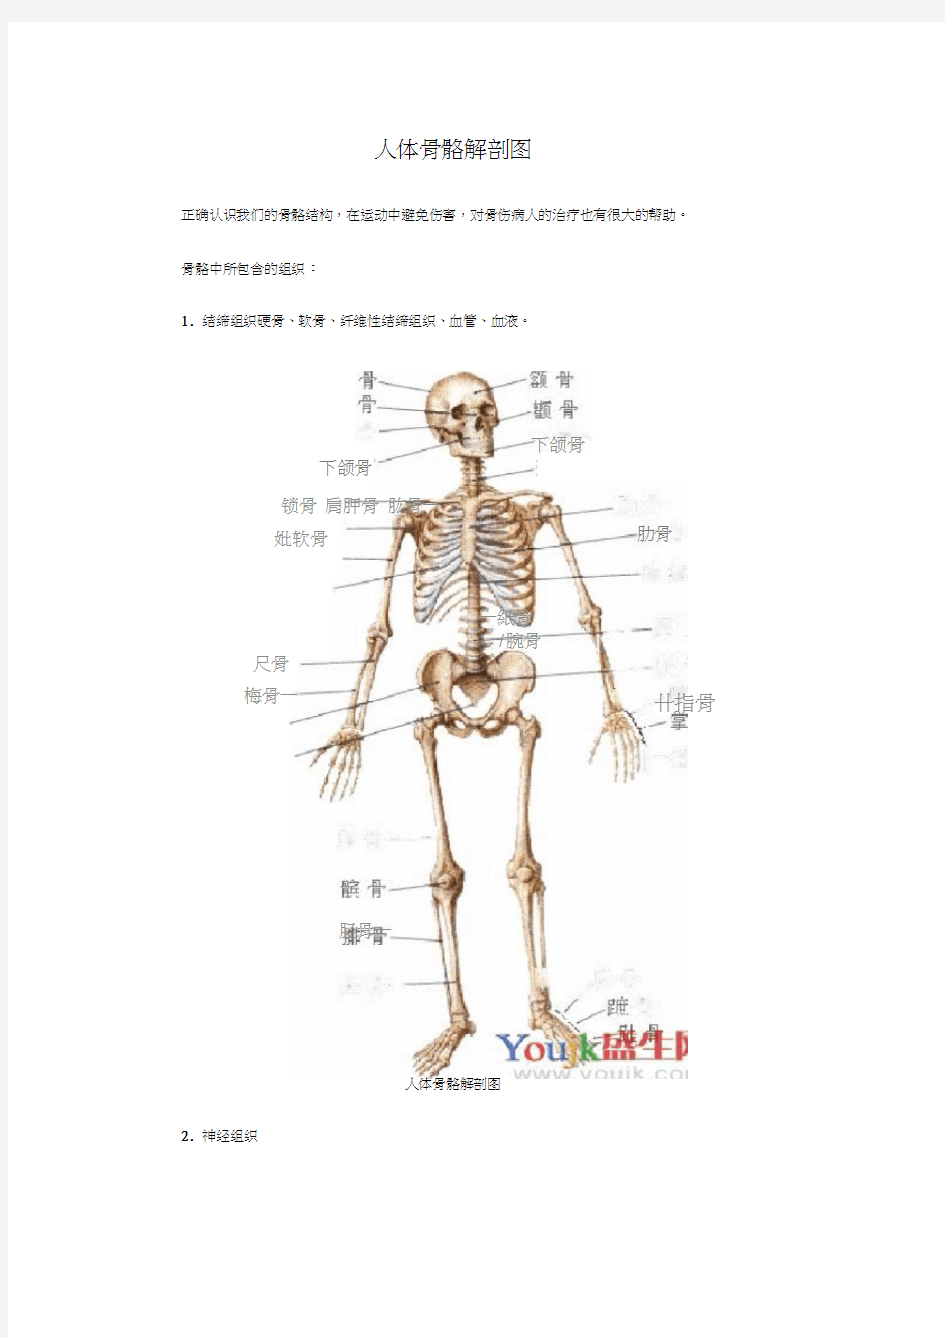 人体骨骼解剖图(20200718095600)